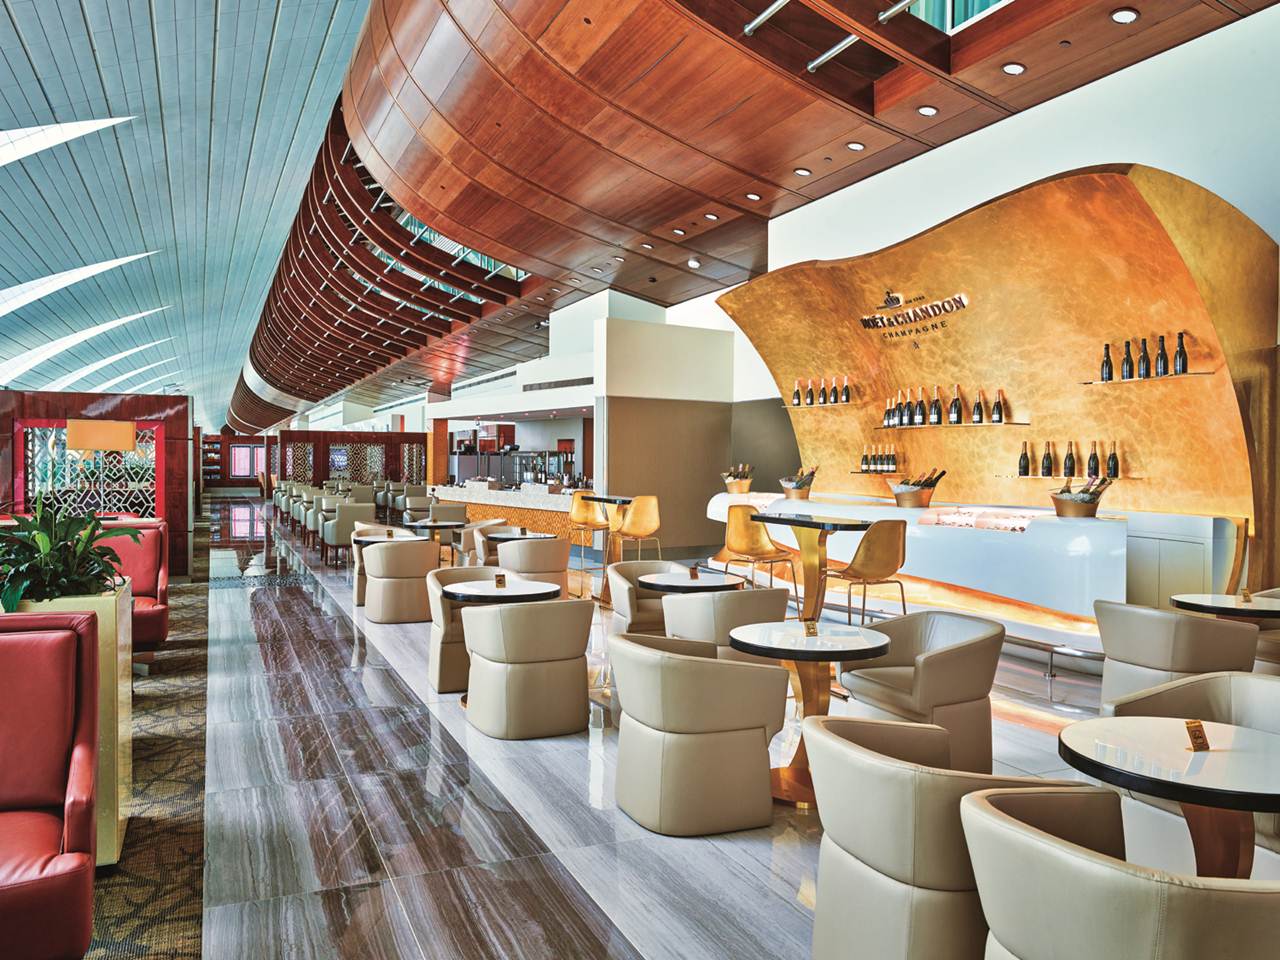 Salão Moët & Chandon no Lounge da Emirates no Dubai